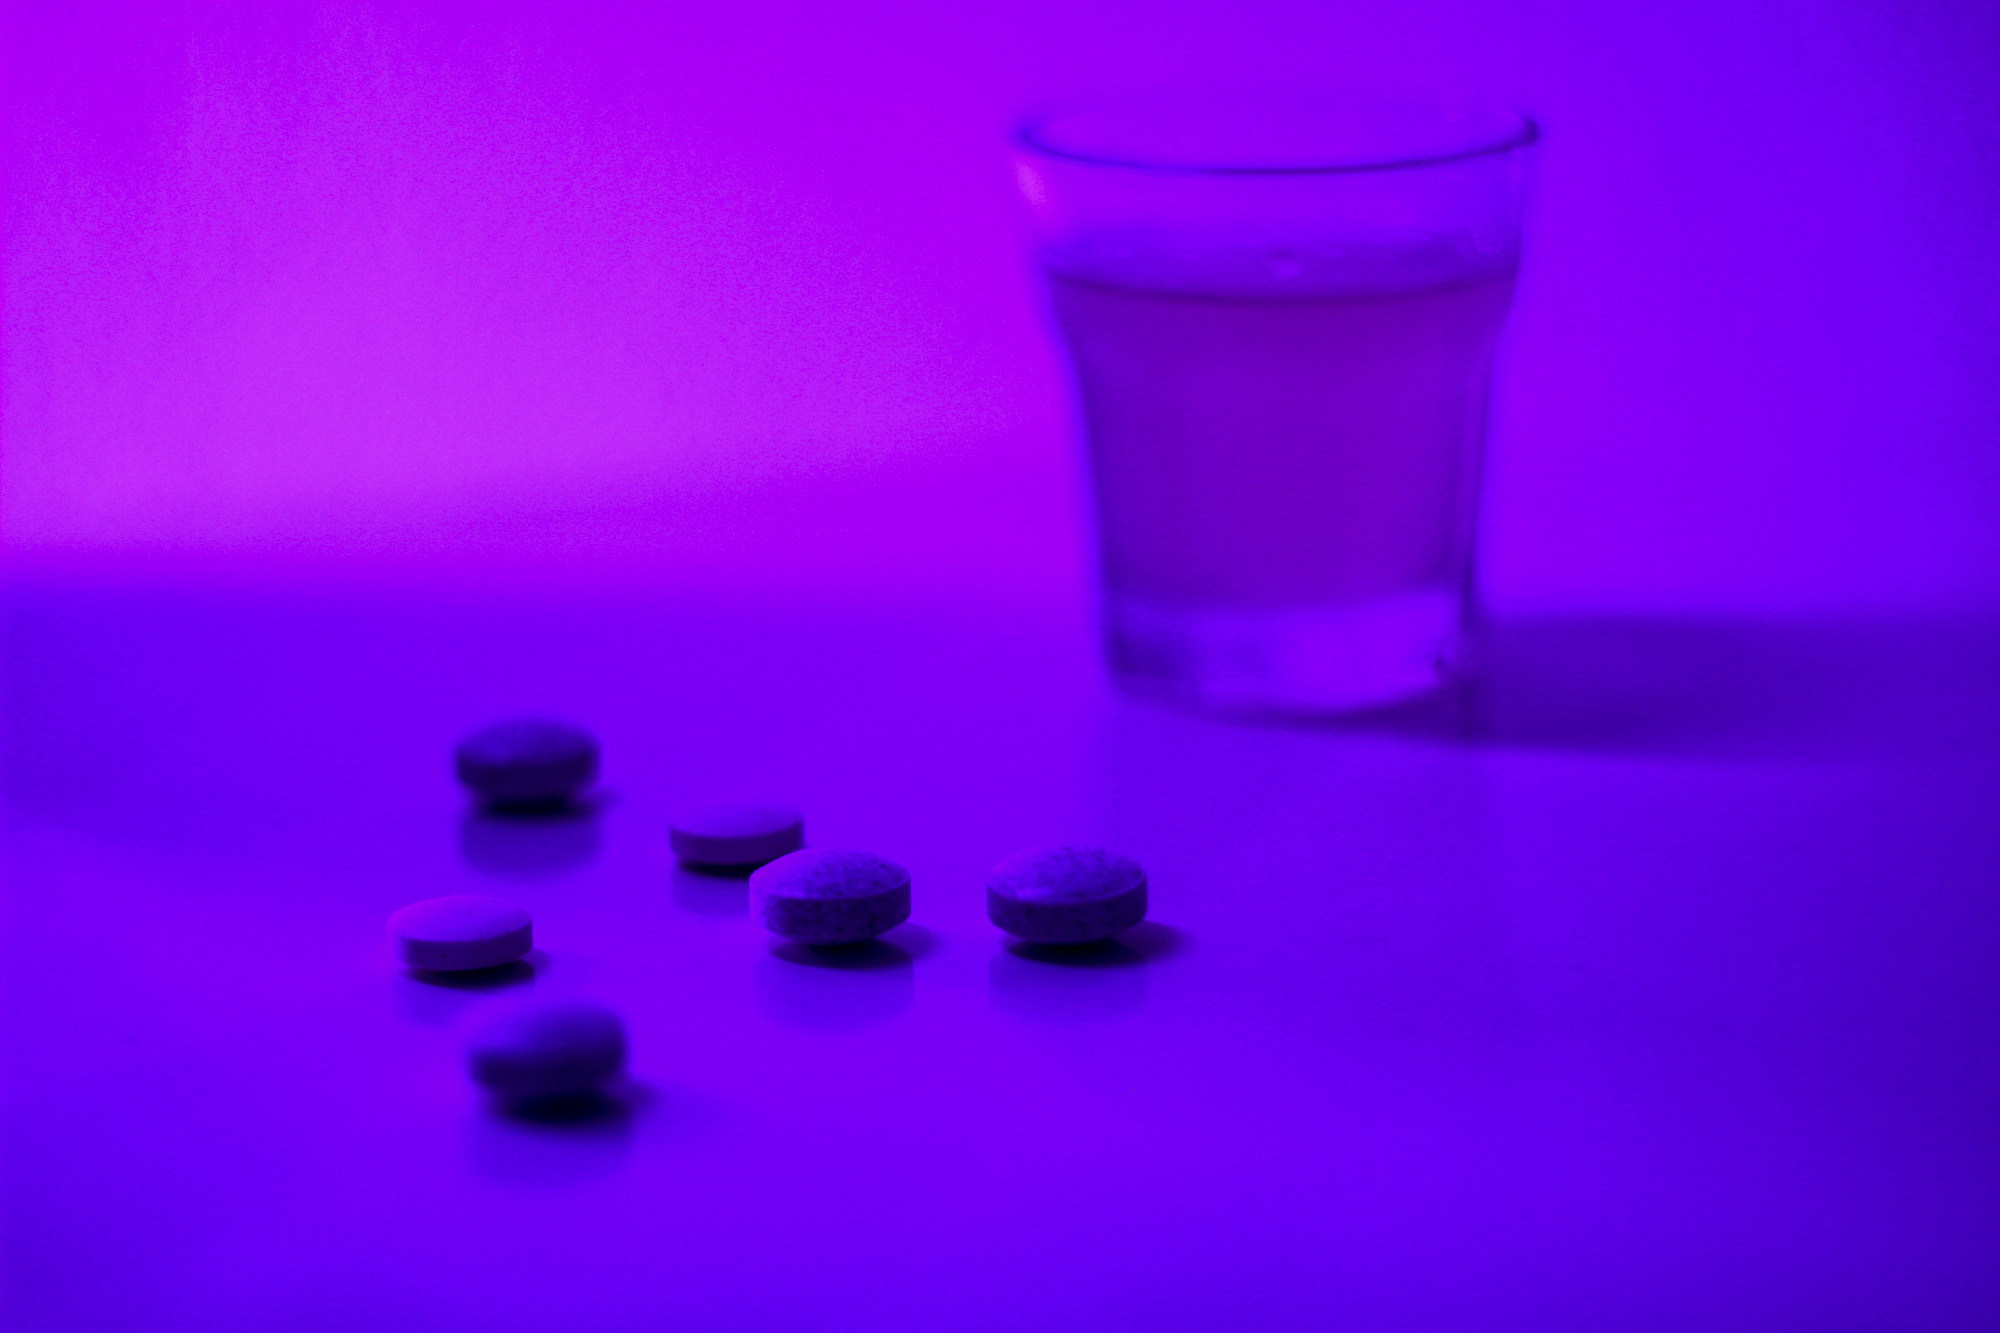 Violetilla valolla valaistulla alustalla on shottilasi ja muutama pilleri, jotka kuvaavat alkoholin ja huumausaineiden sekakäyttöä.